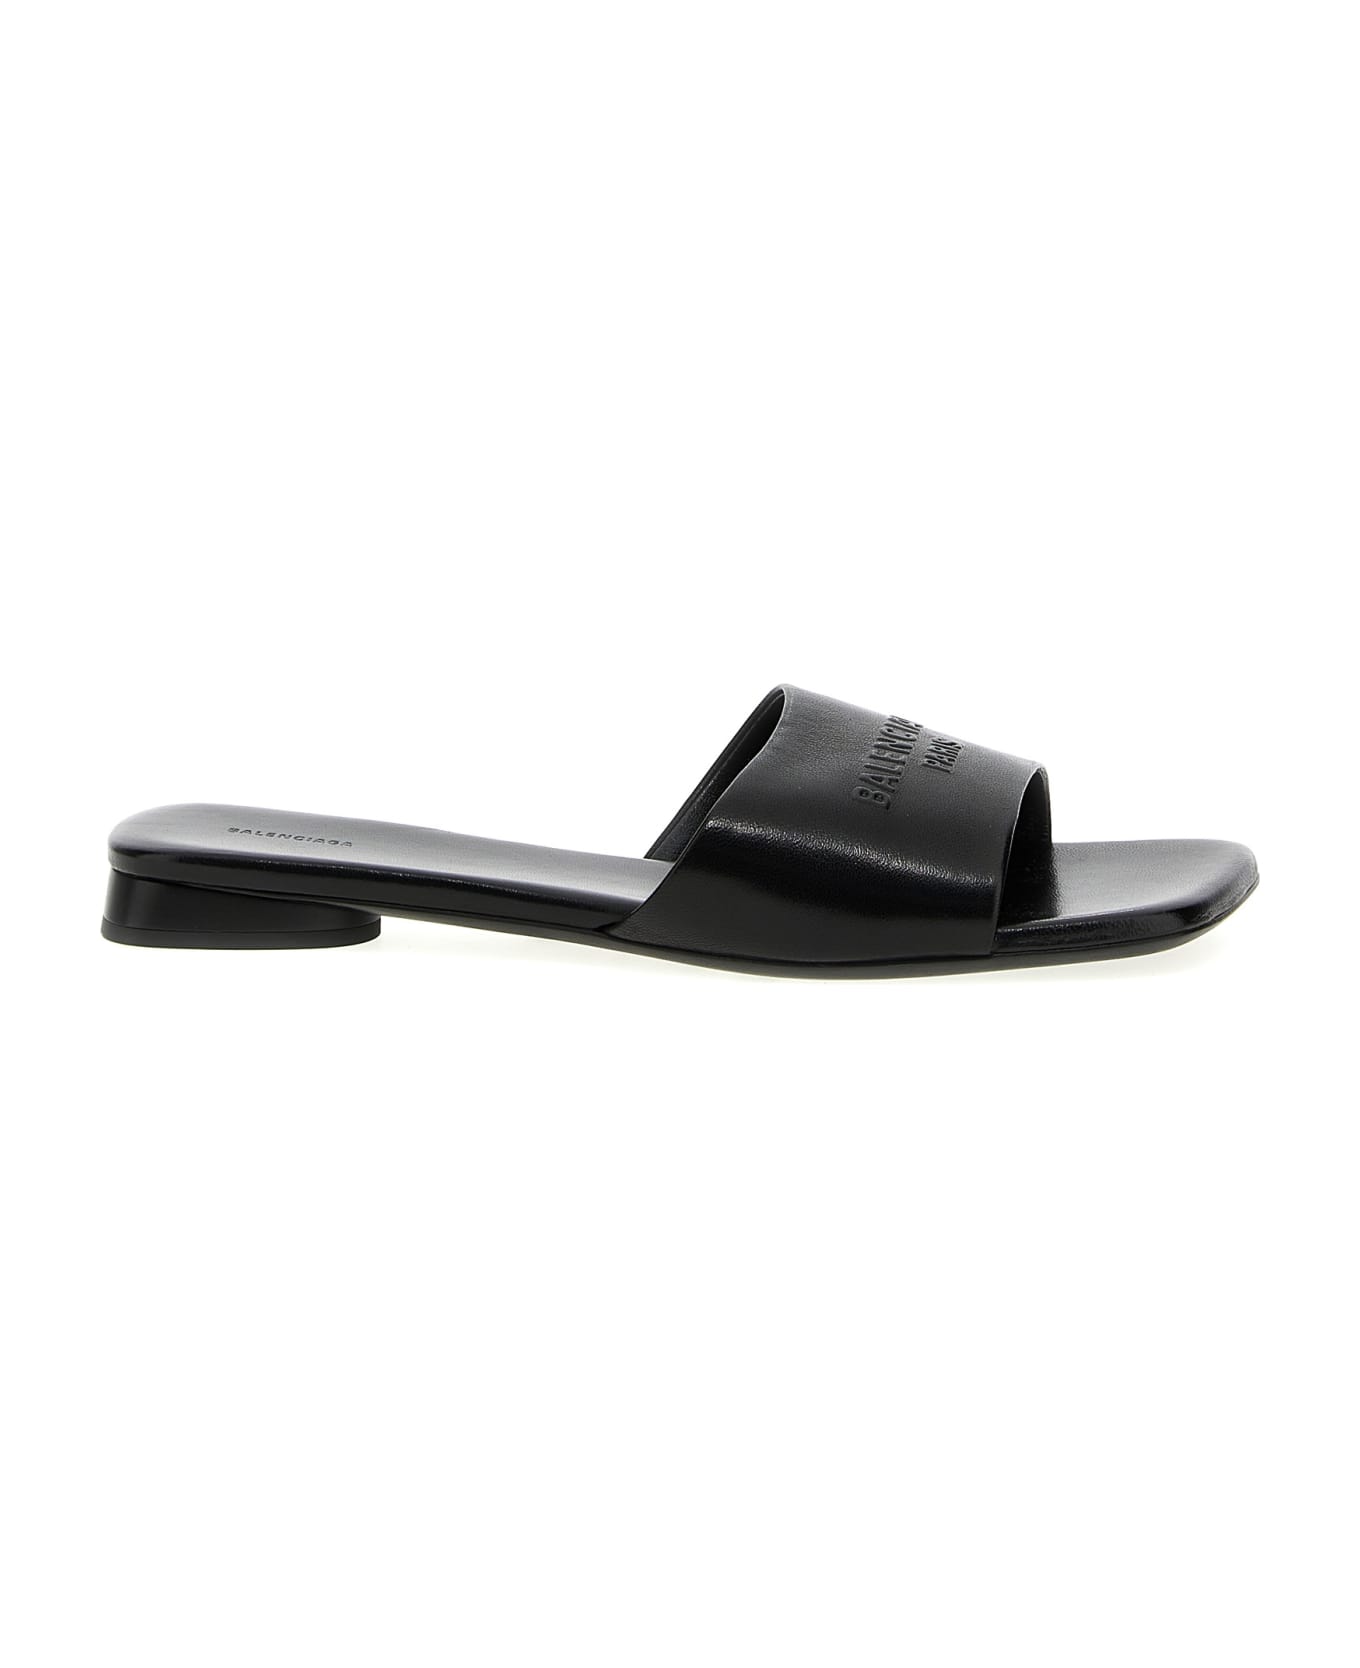 Balenciaga 'duty Free' Sandals - Black   サンダル